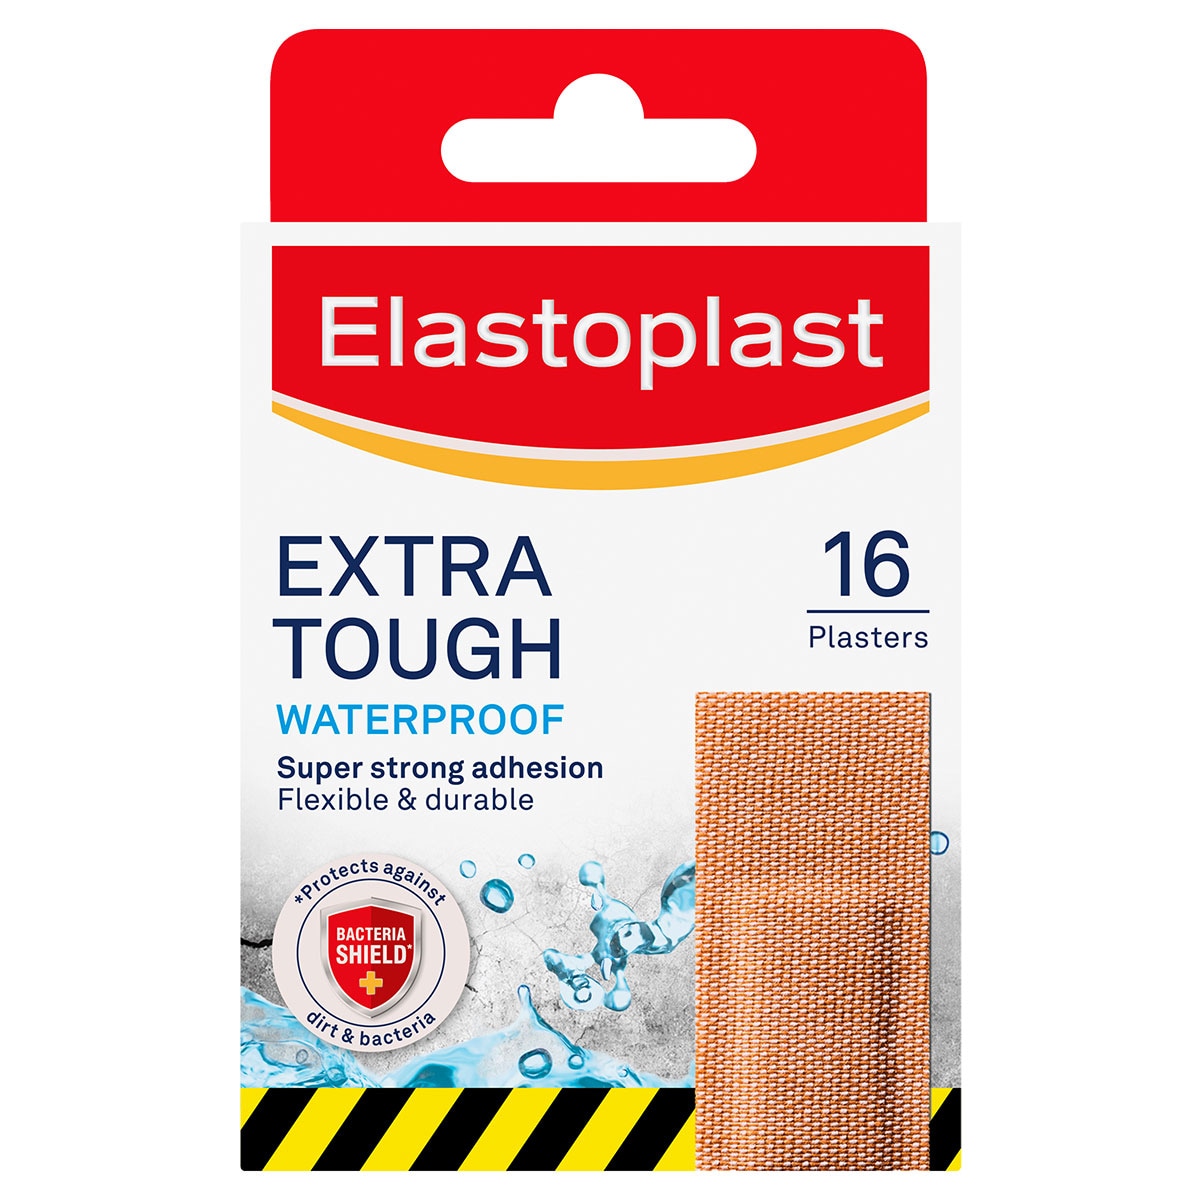 Elastoplast Extra Tough Waterproof Plasters 16 Pack